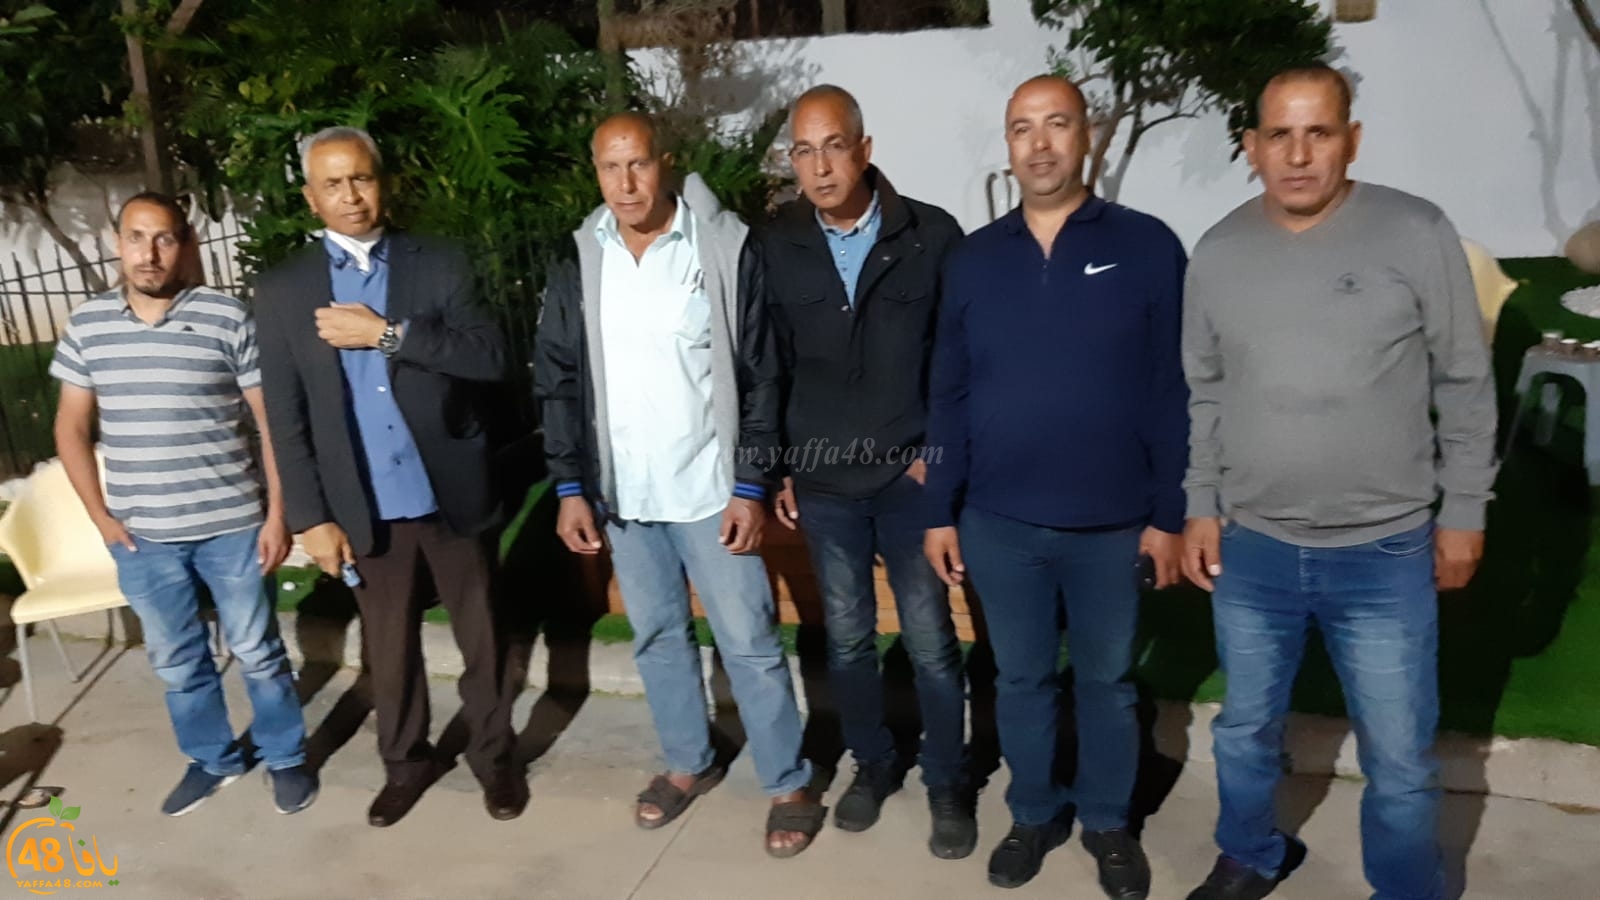 اللد: عقد راية الصلح بين عائلتي أبو صيام و الزبارقة